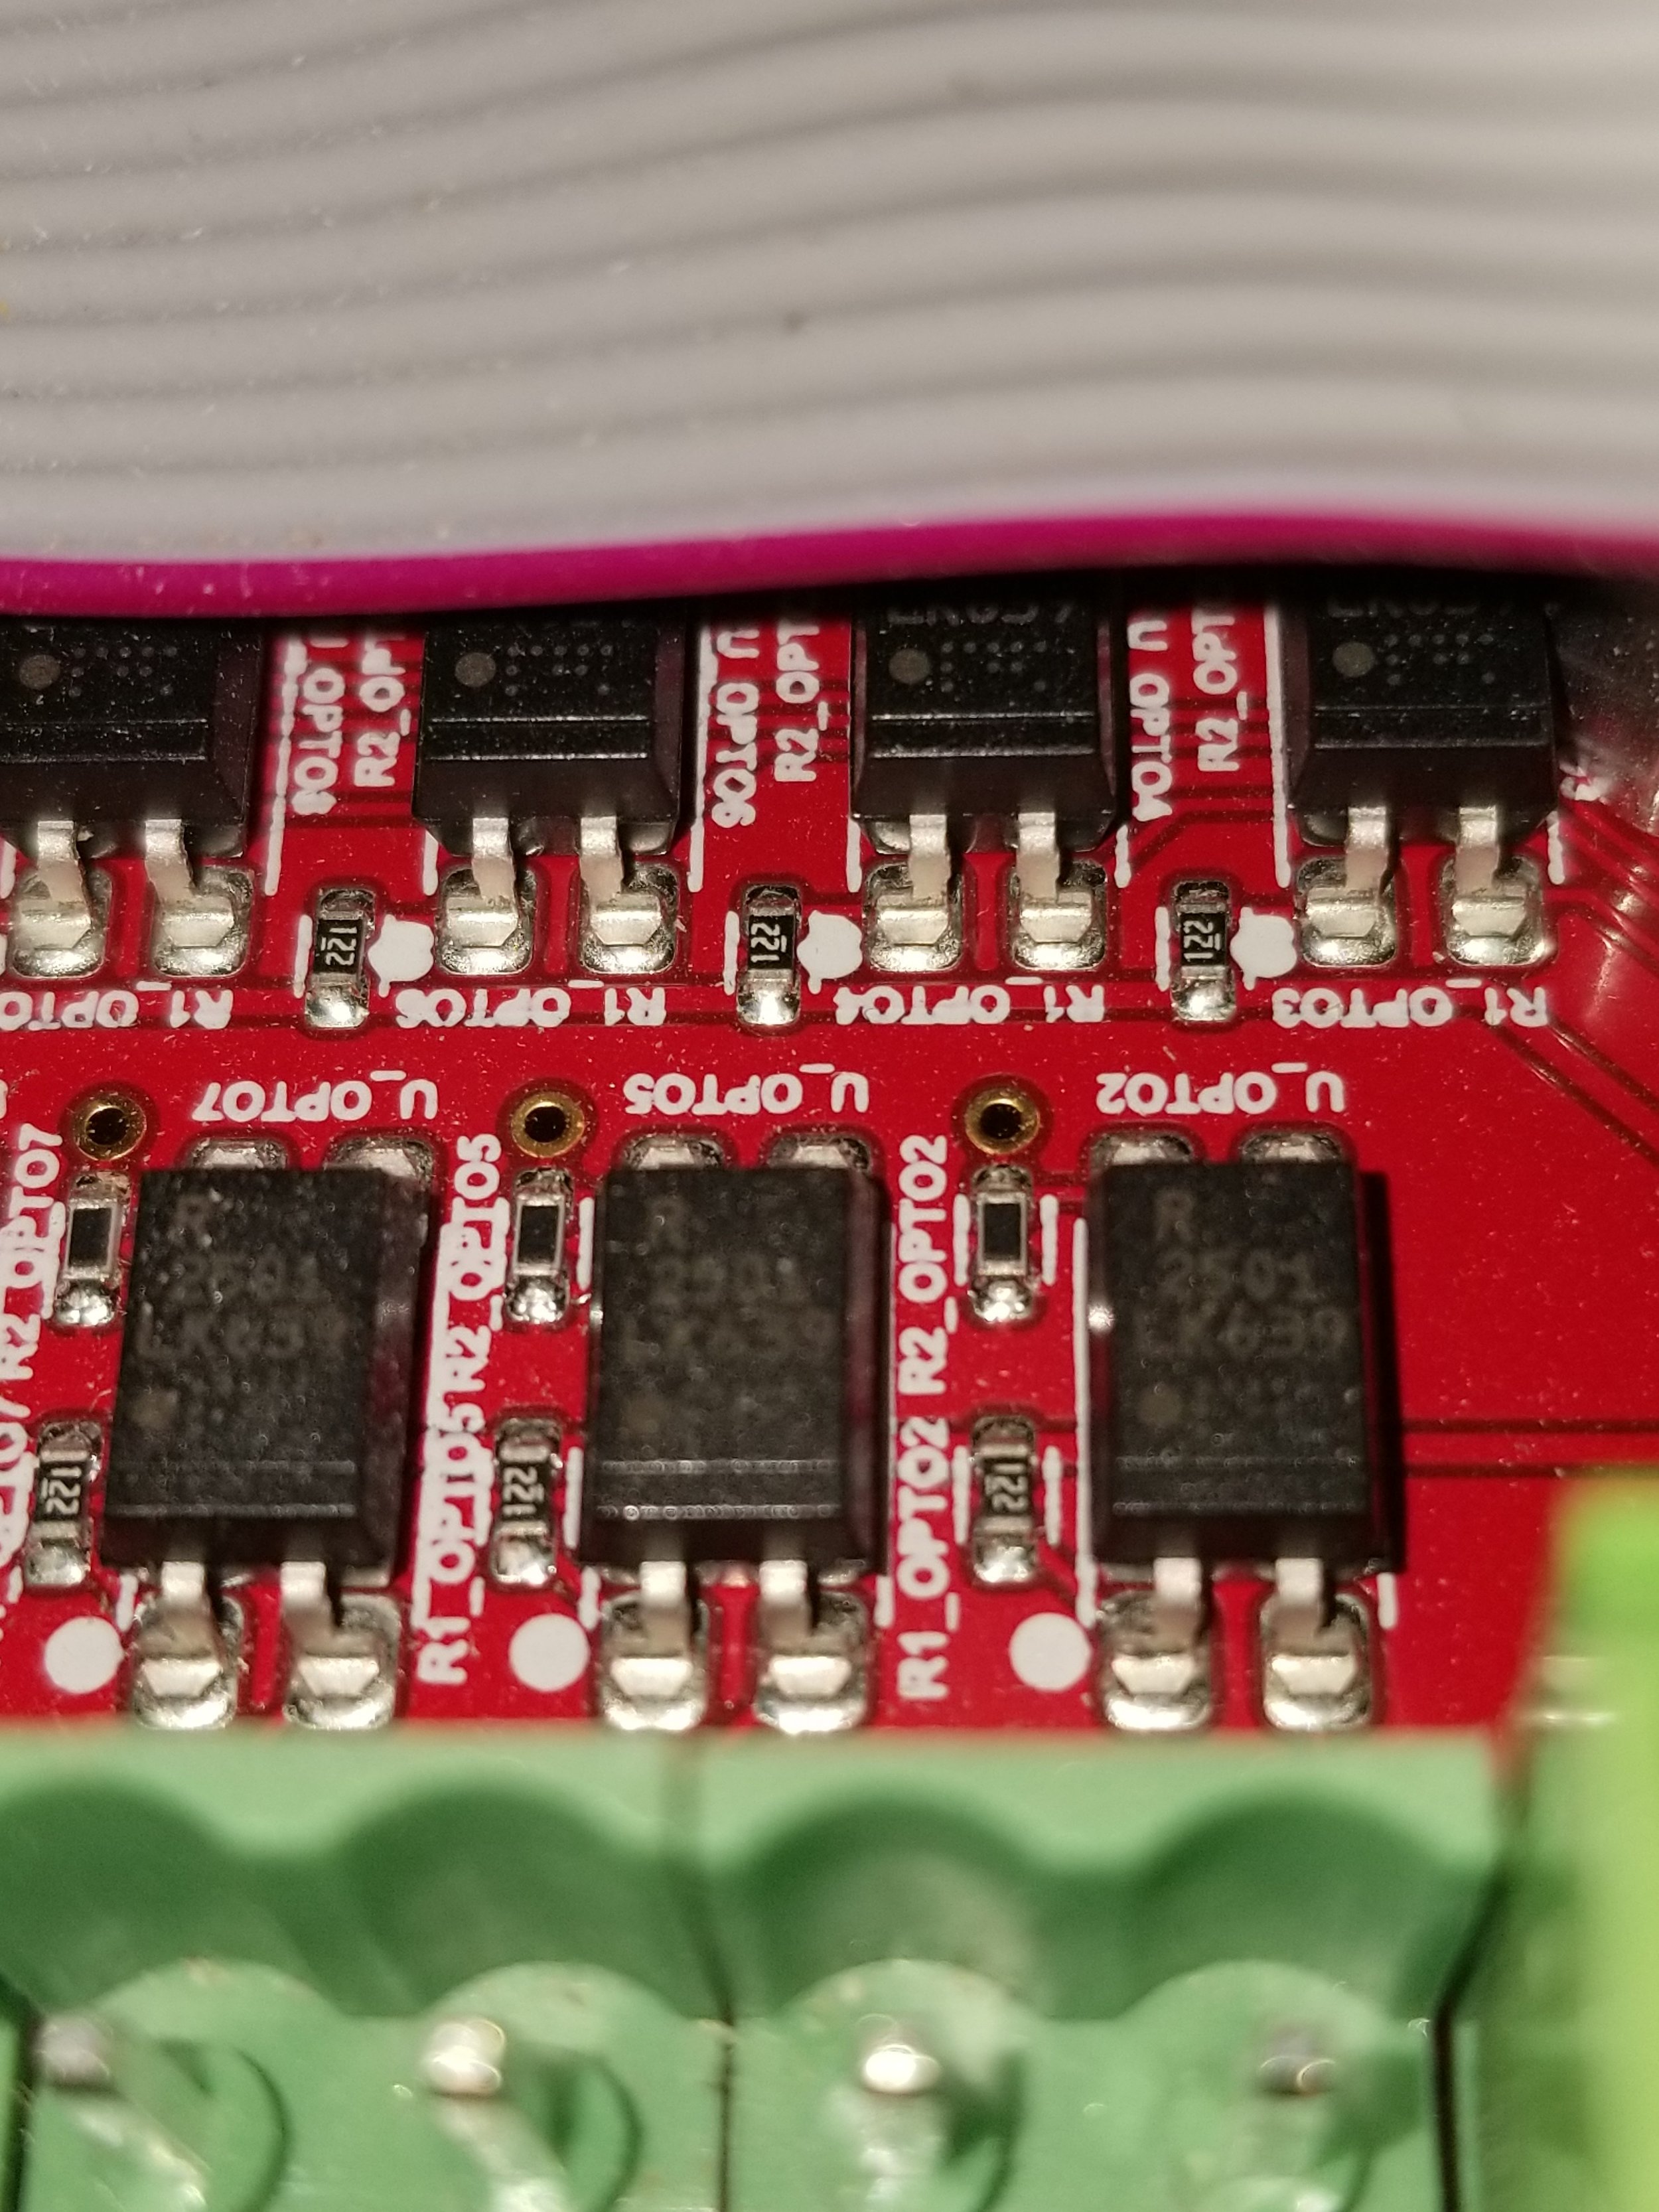 2501 optocoupler and 1.2k
resistor